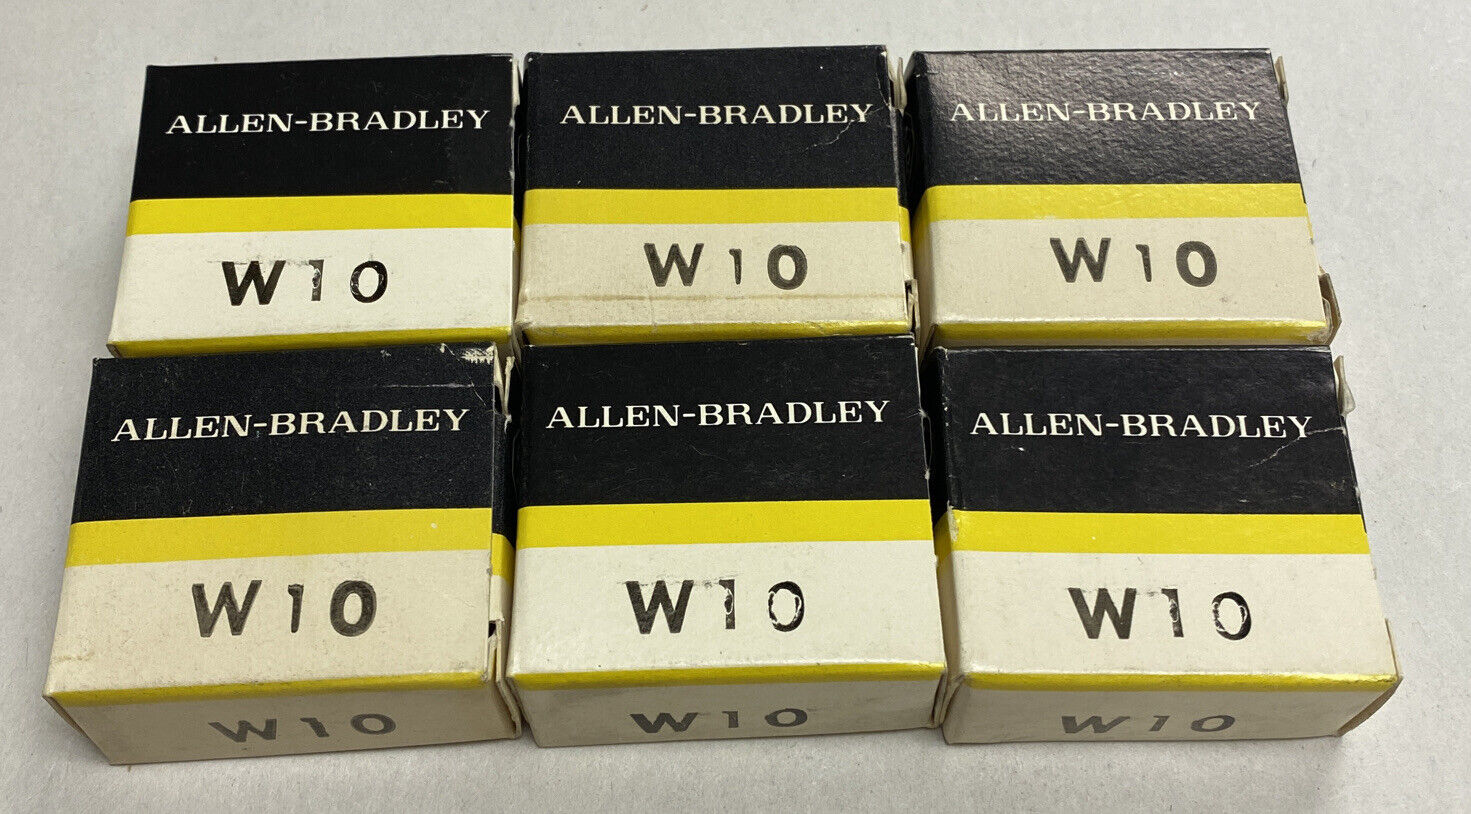 Allen-Bradley W10 Heater Lot Of 6 New